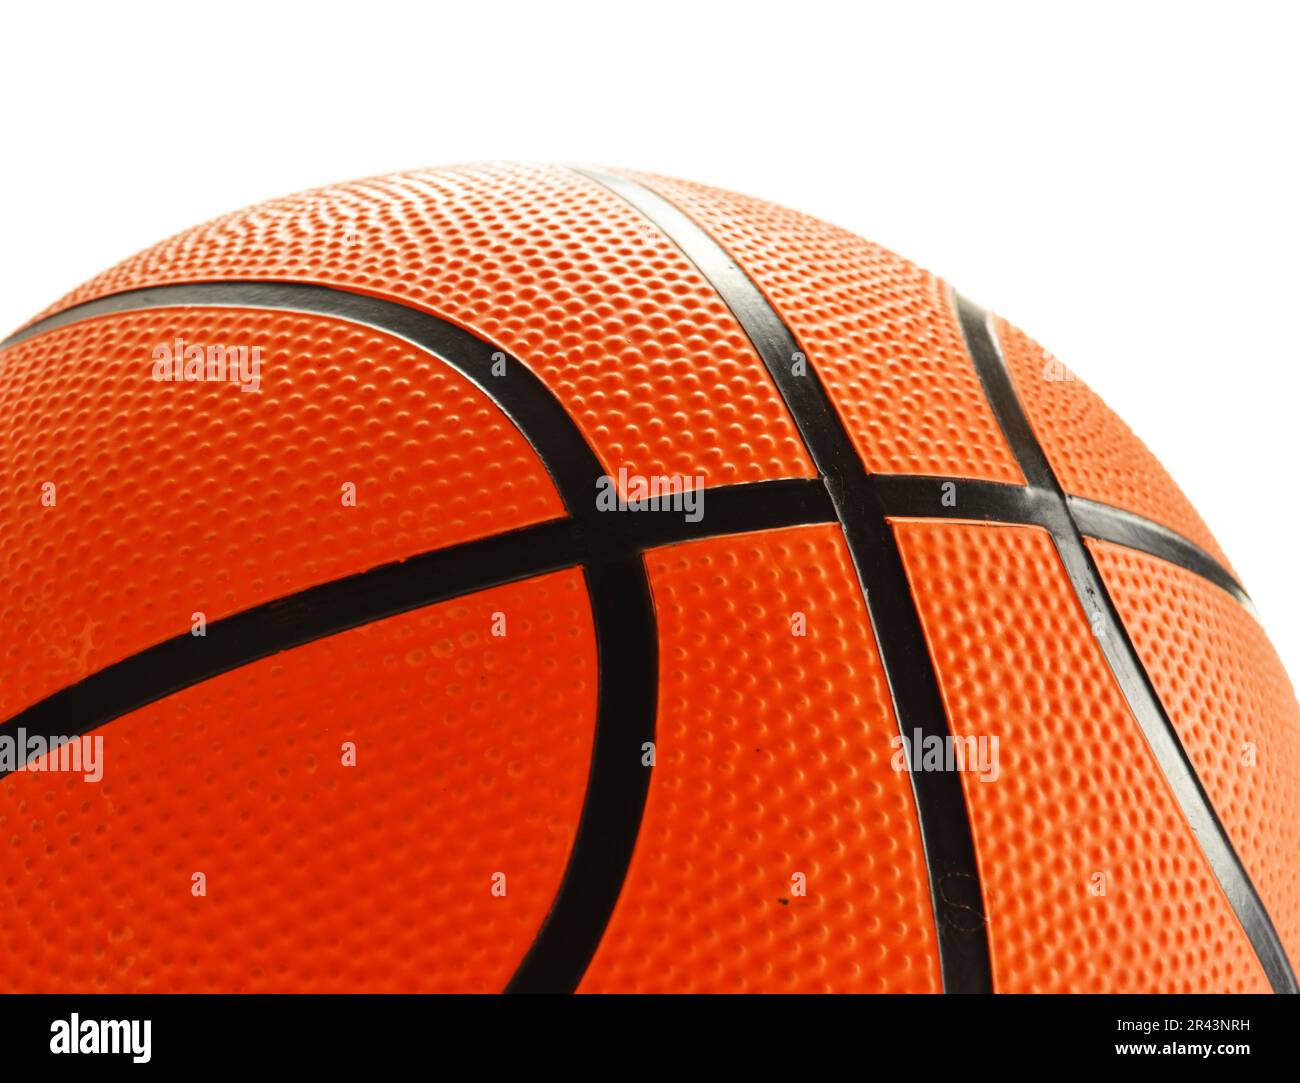 Basketball isolated on white background Stock Photo